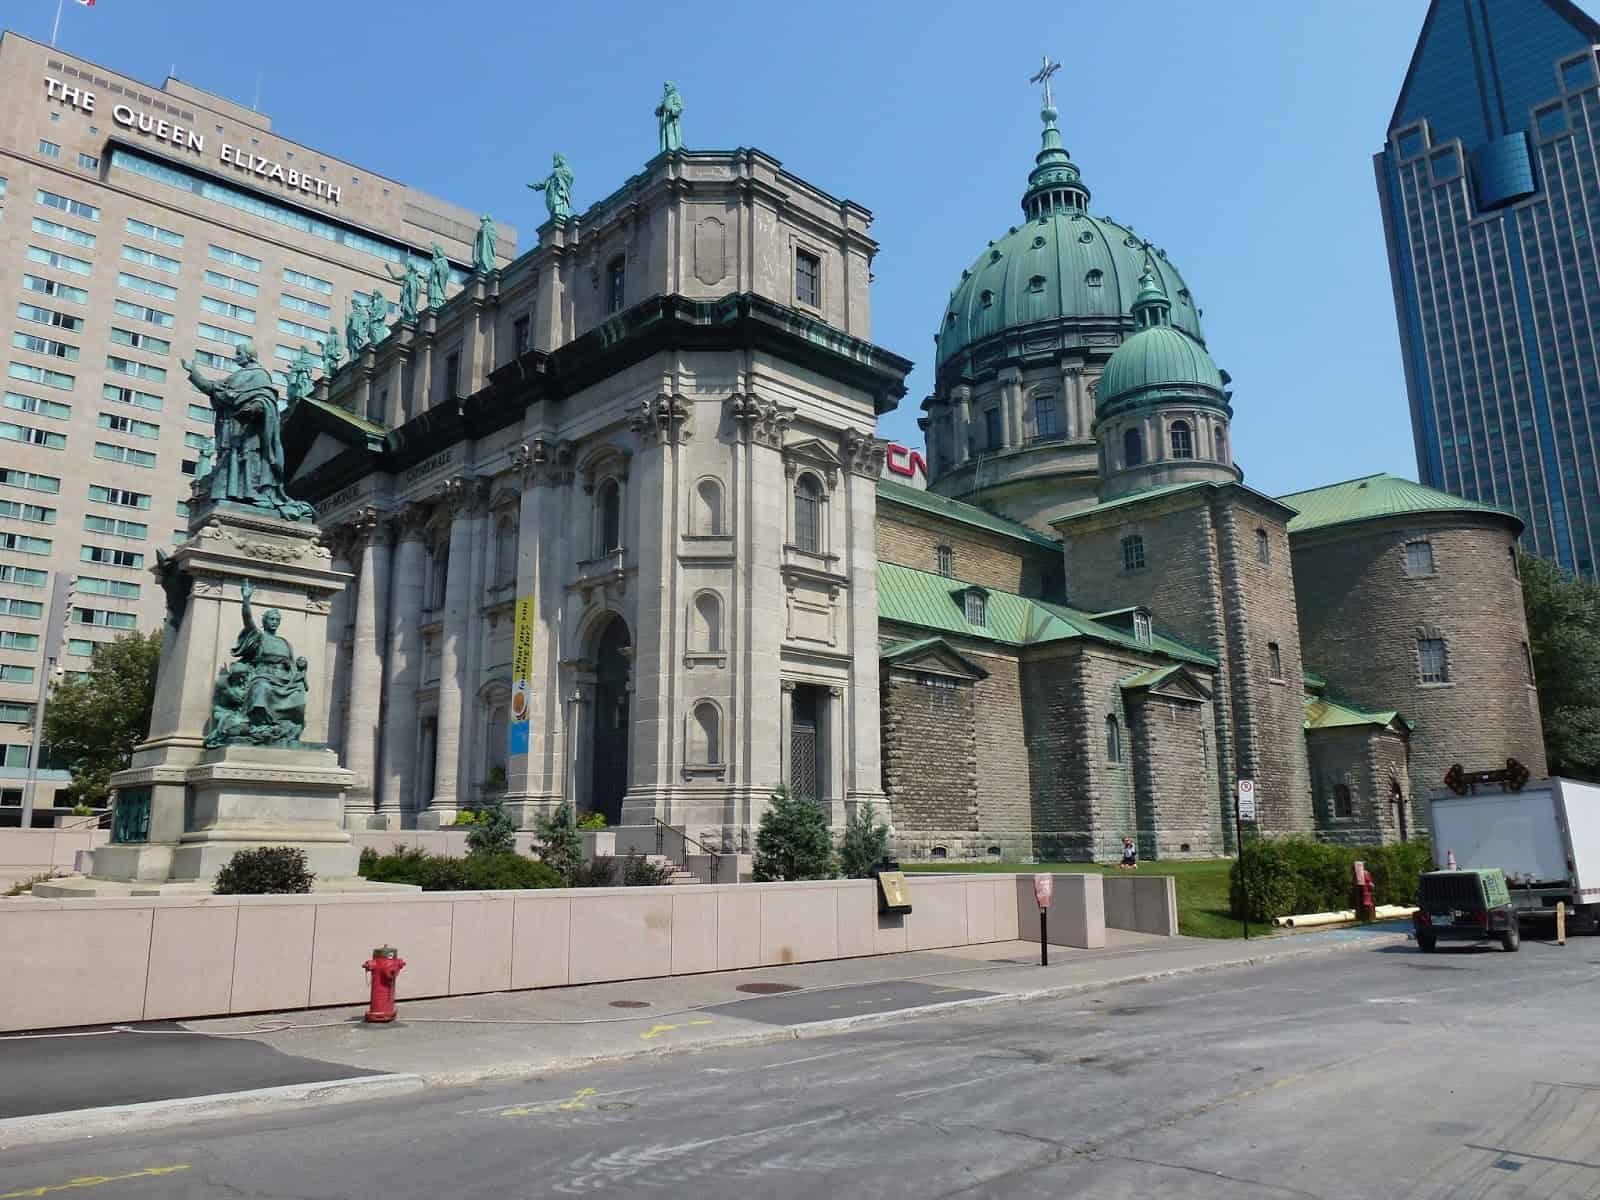 Cathédrale Marie-Reine-du-Monde in Montréal, Québec, Canada